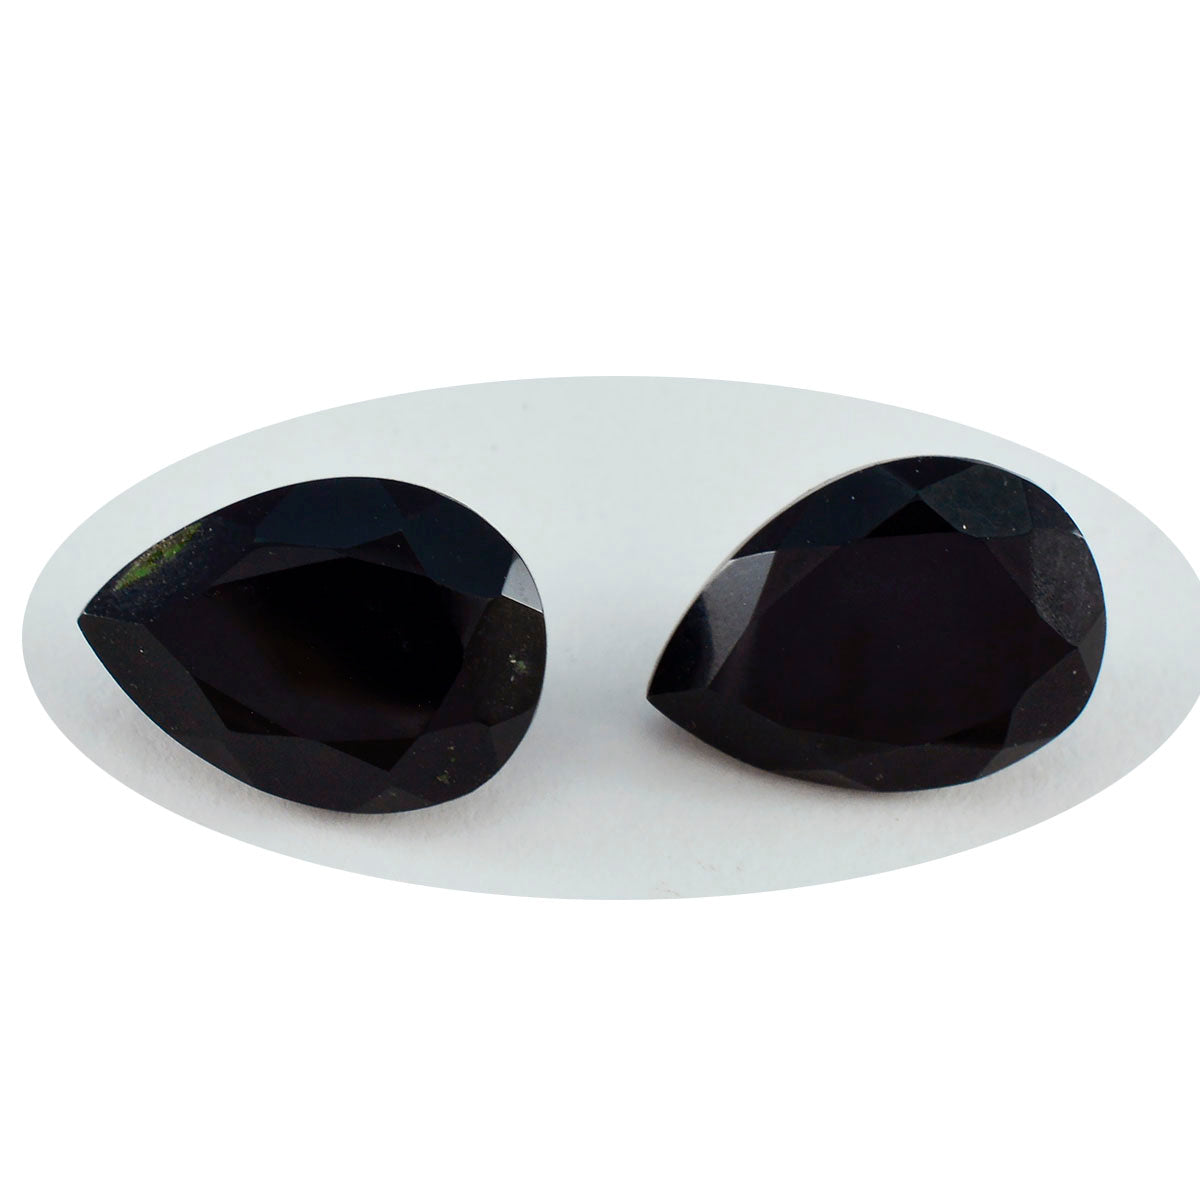 Riyogems 1PC Genuine Black Onyx Faceted 10x14 mm Pear Shape A+1 Quality Gemstone